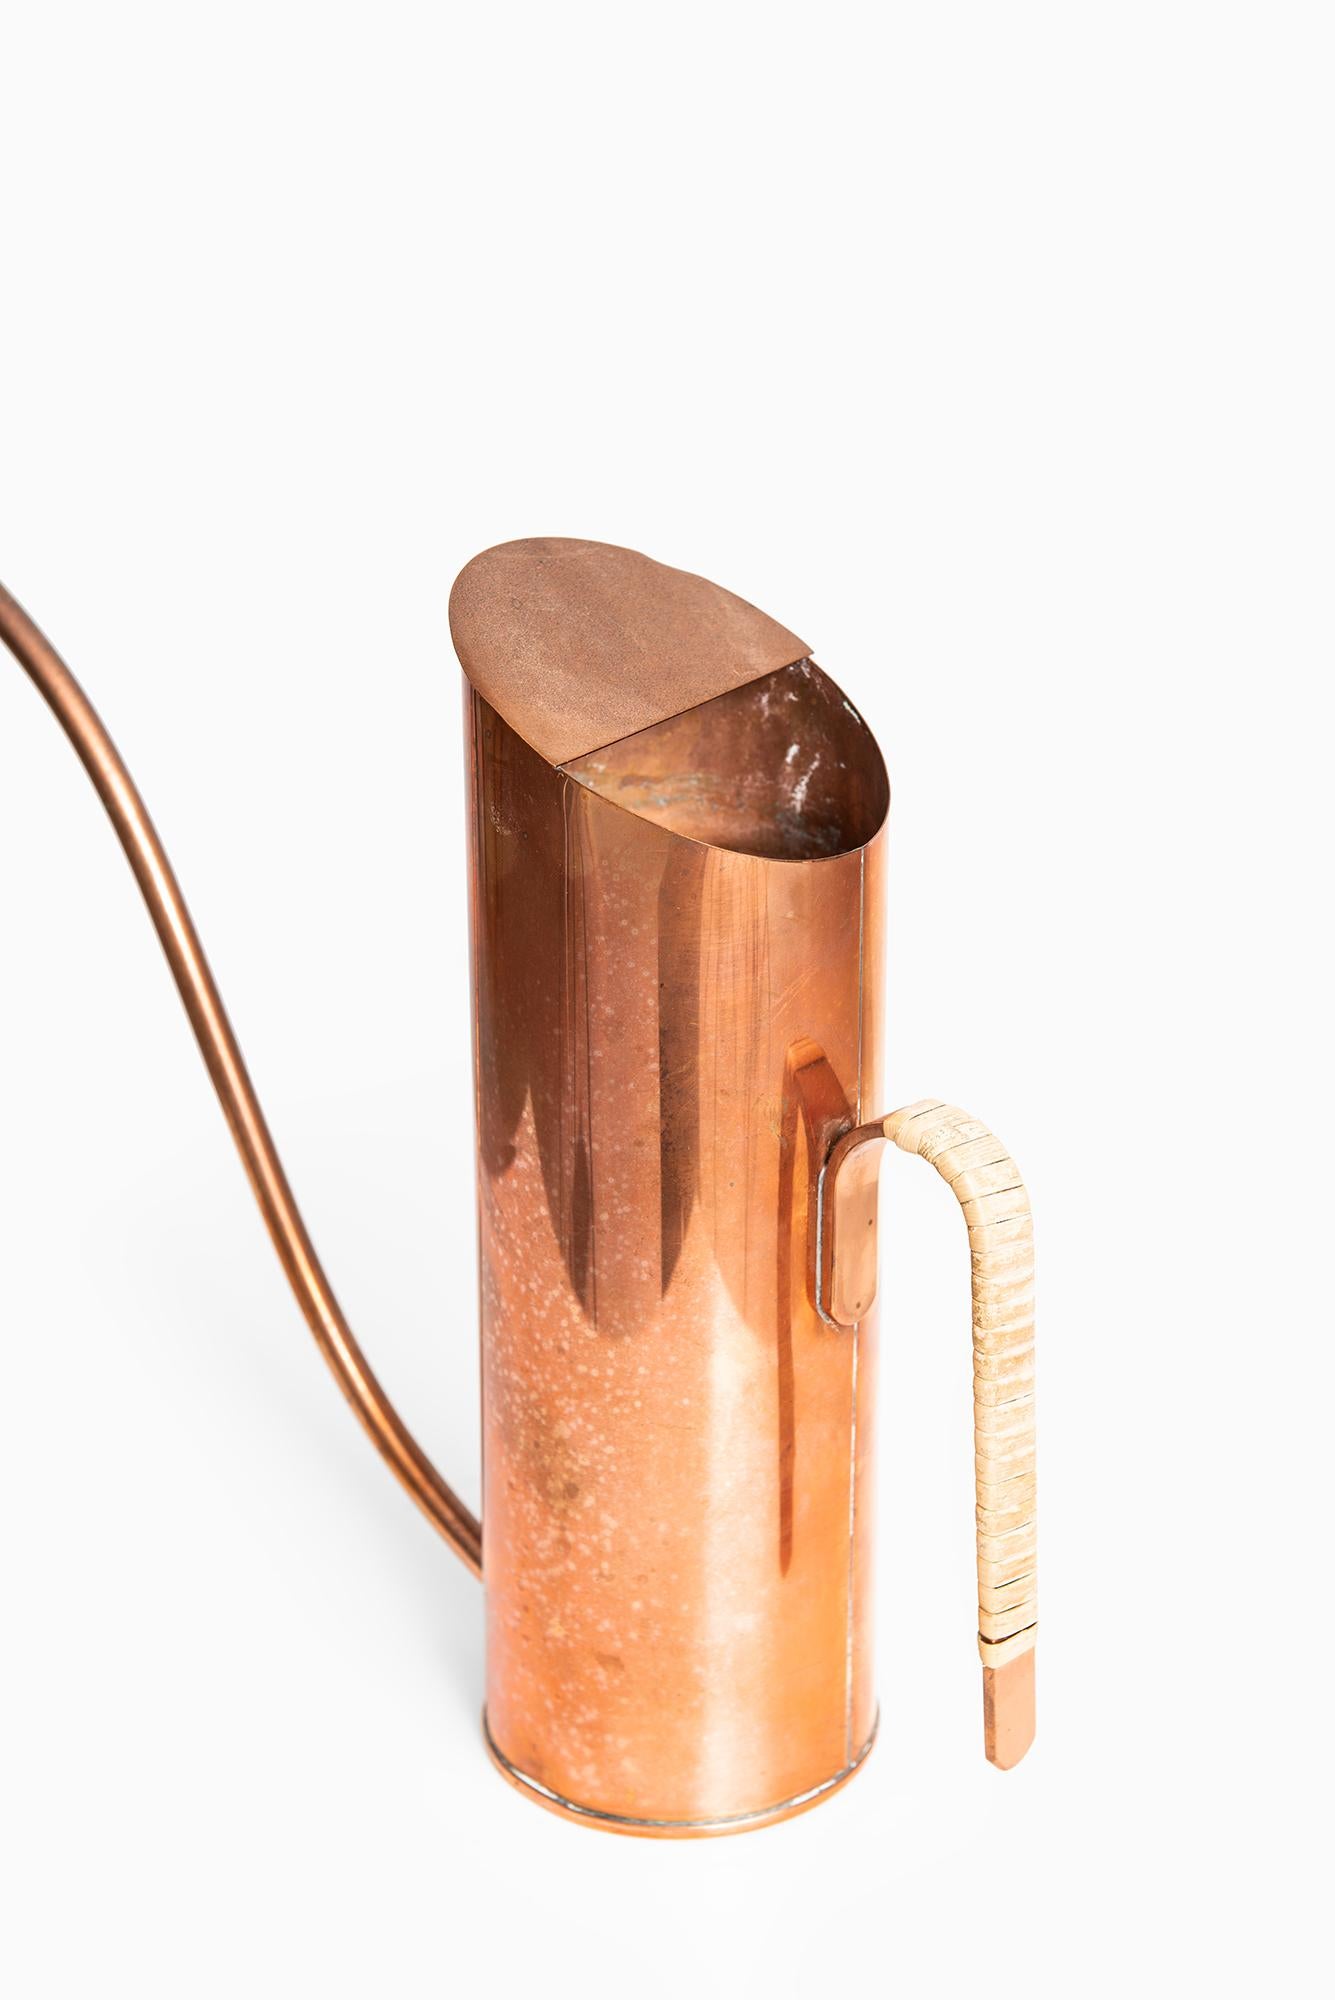 Wasserkrug entworfen von Gunnar Ander. Produziert von Ystad Metall in Schweden.